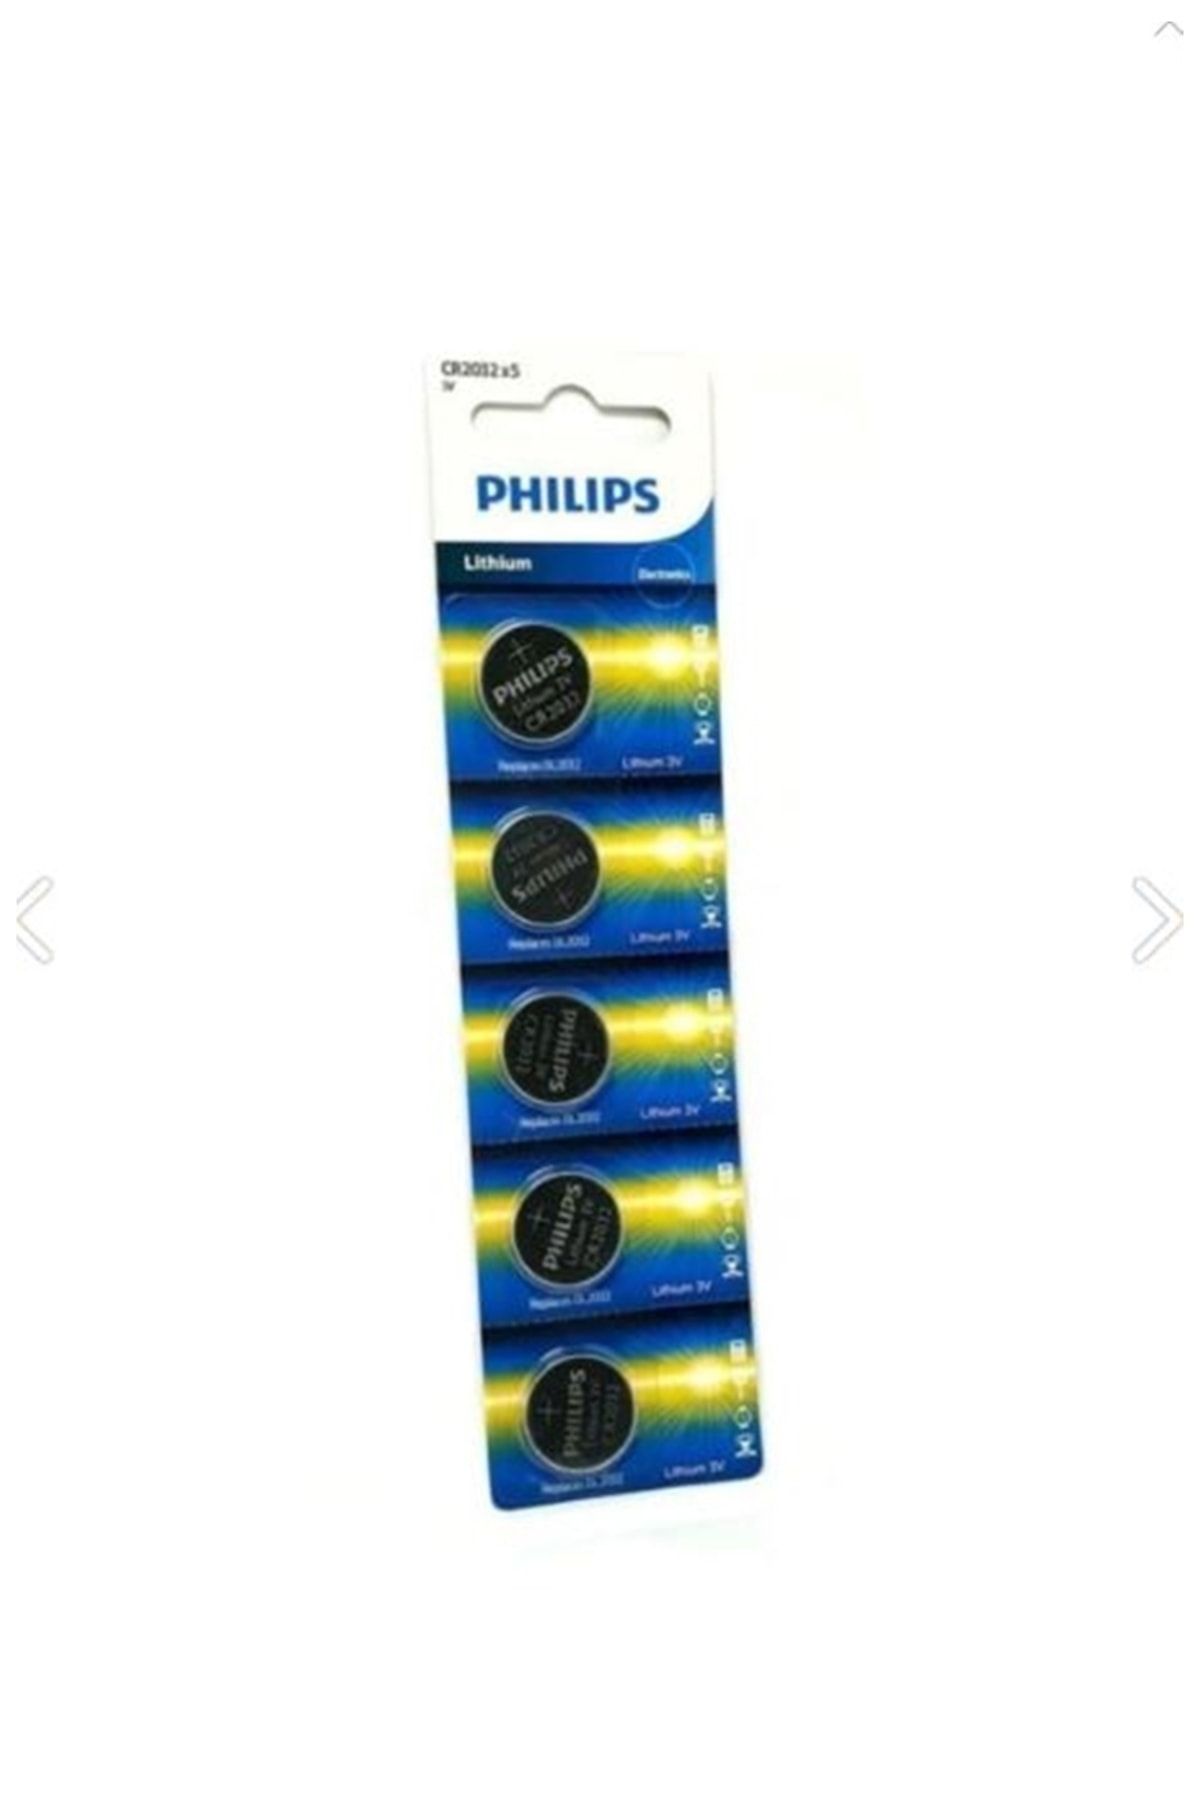 Philips 2032 Pil Lithium 3 Volt 5 Li Cr2032p5 Şeker Ölçüm Cihazı , Baskül Tartı Bios Anakart Pili